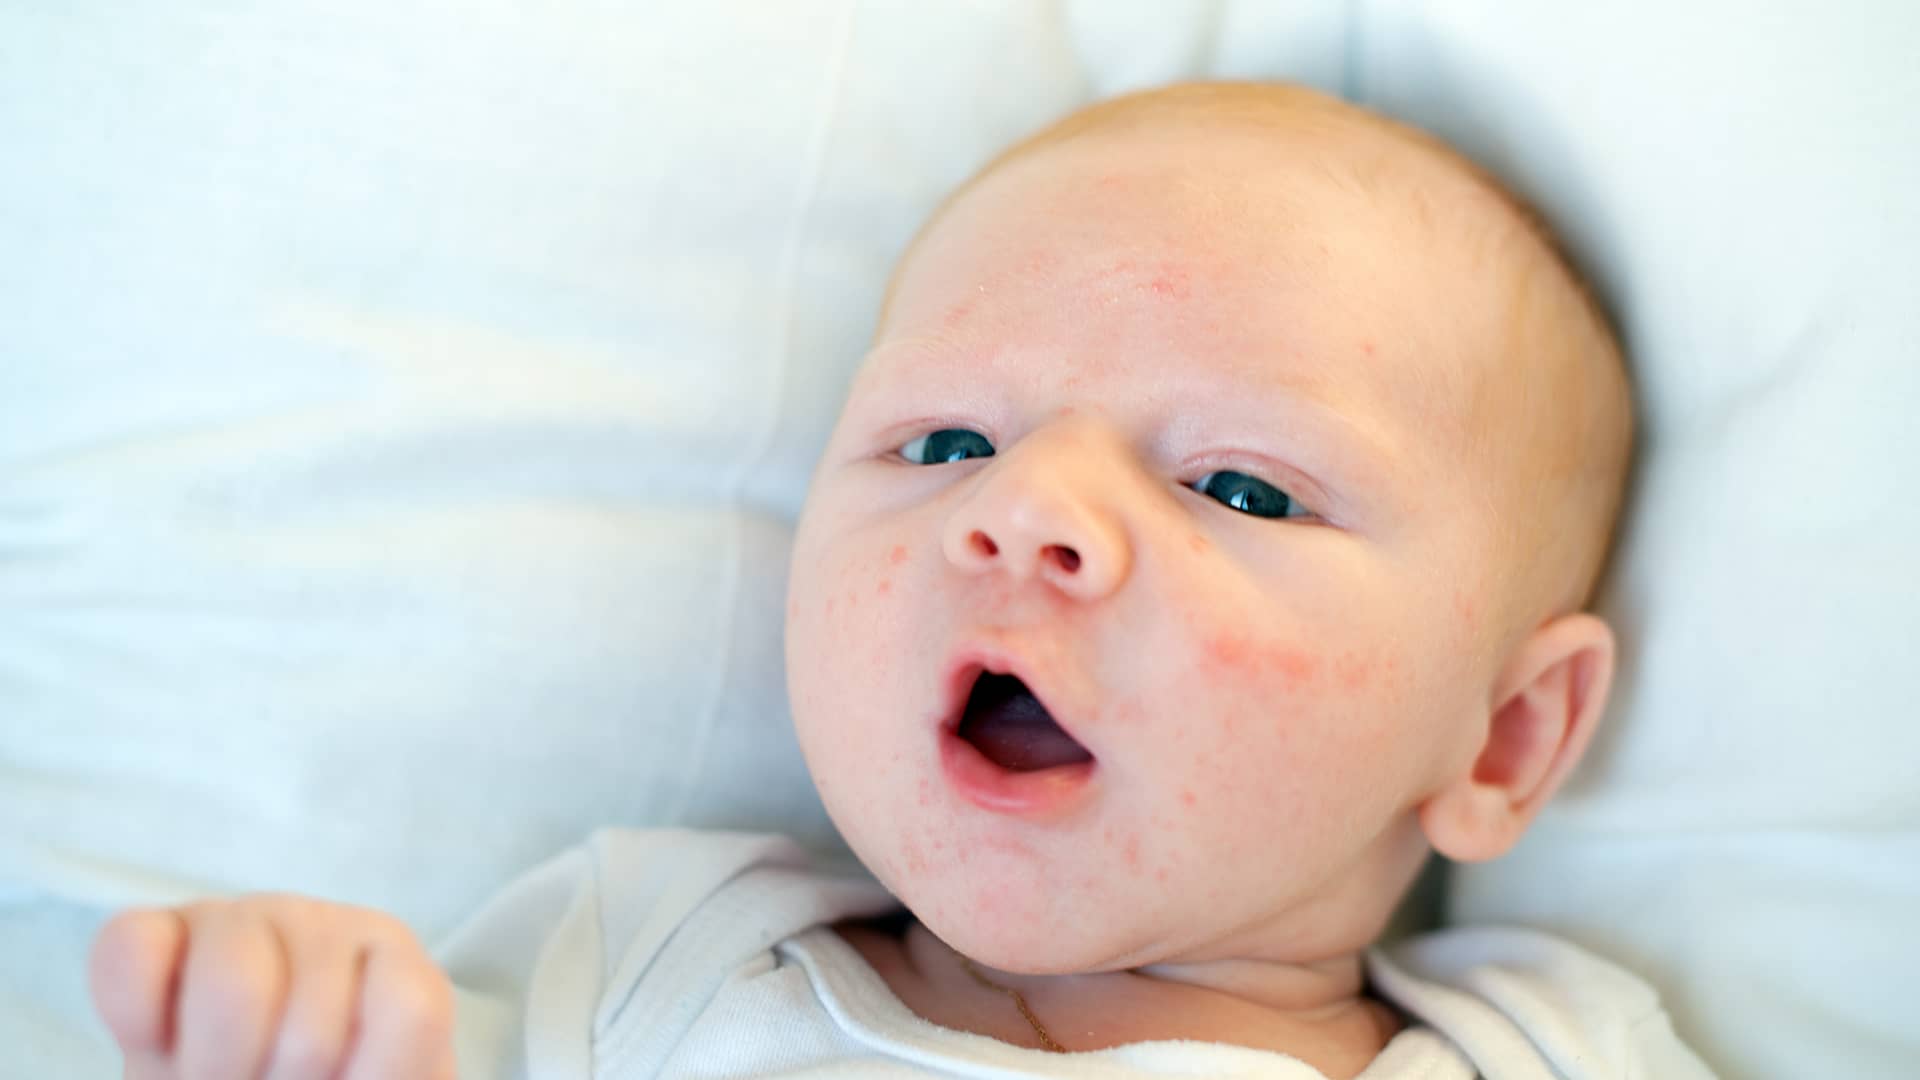 cara de un bebe llena de granitos porque tiene acne